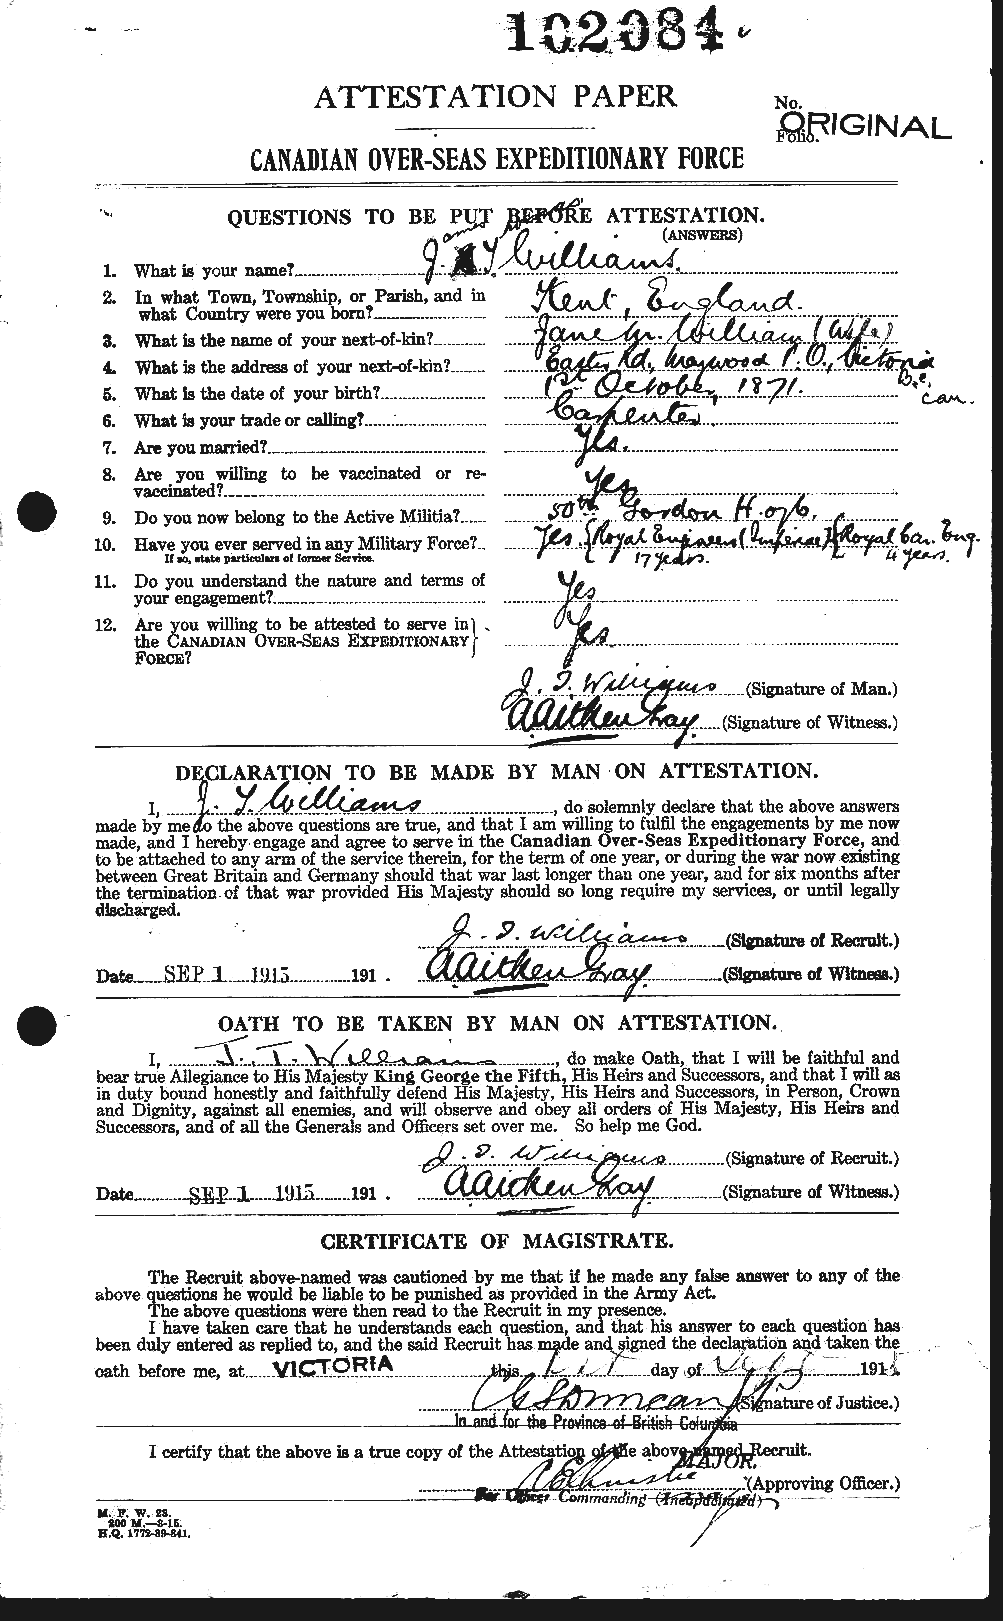 Dossiers du Personnel de la Première Guerre mondiale - CEC 677561a